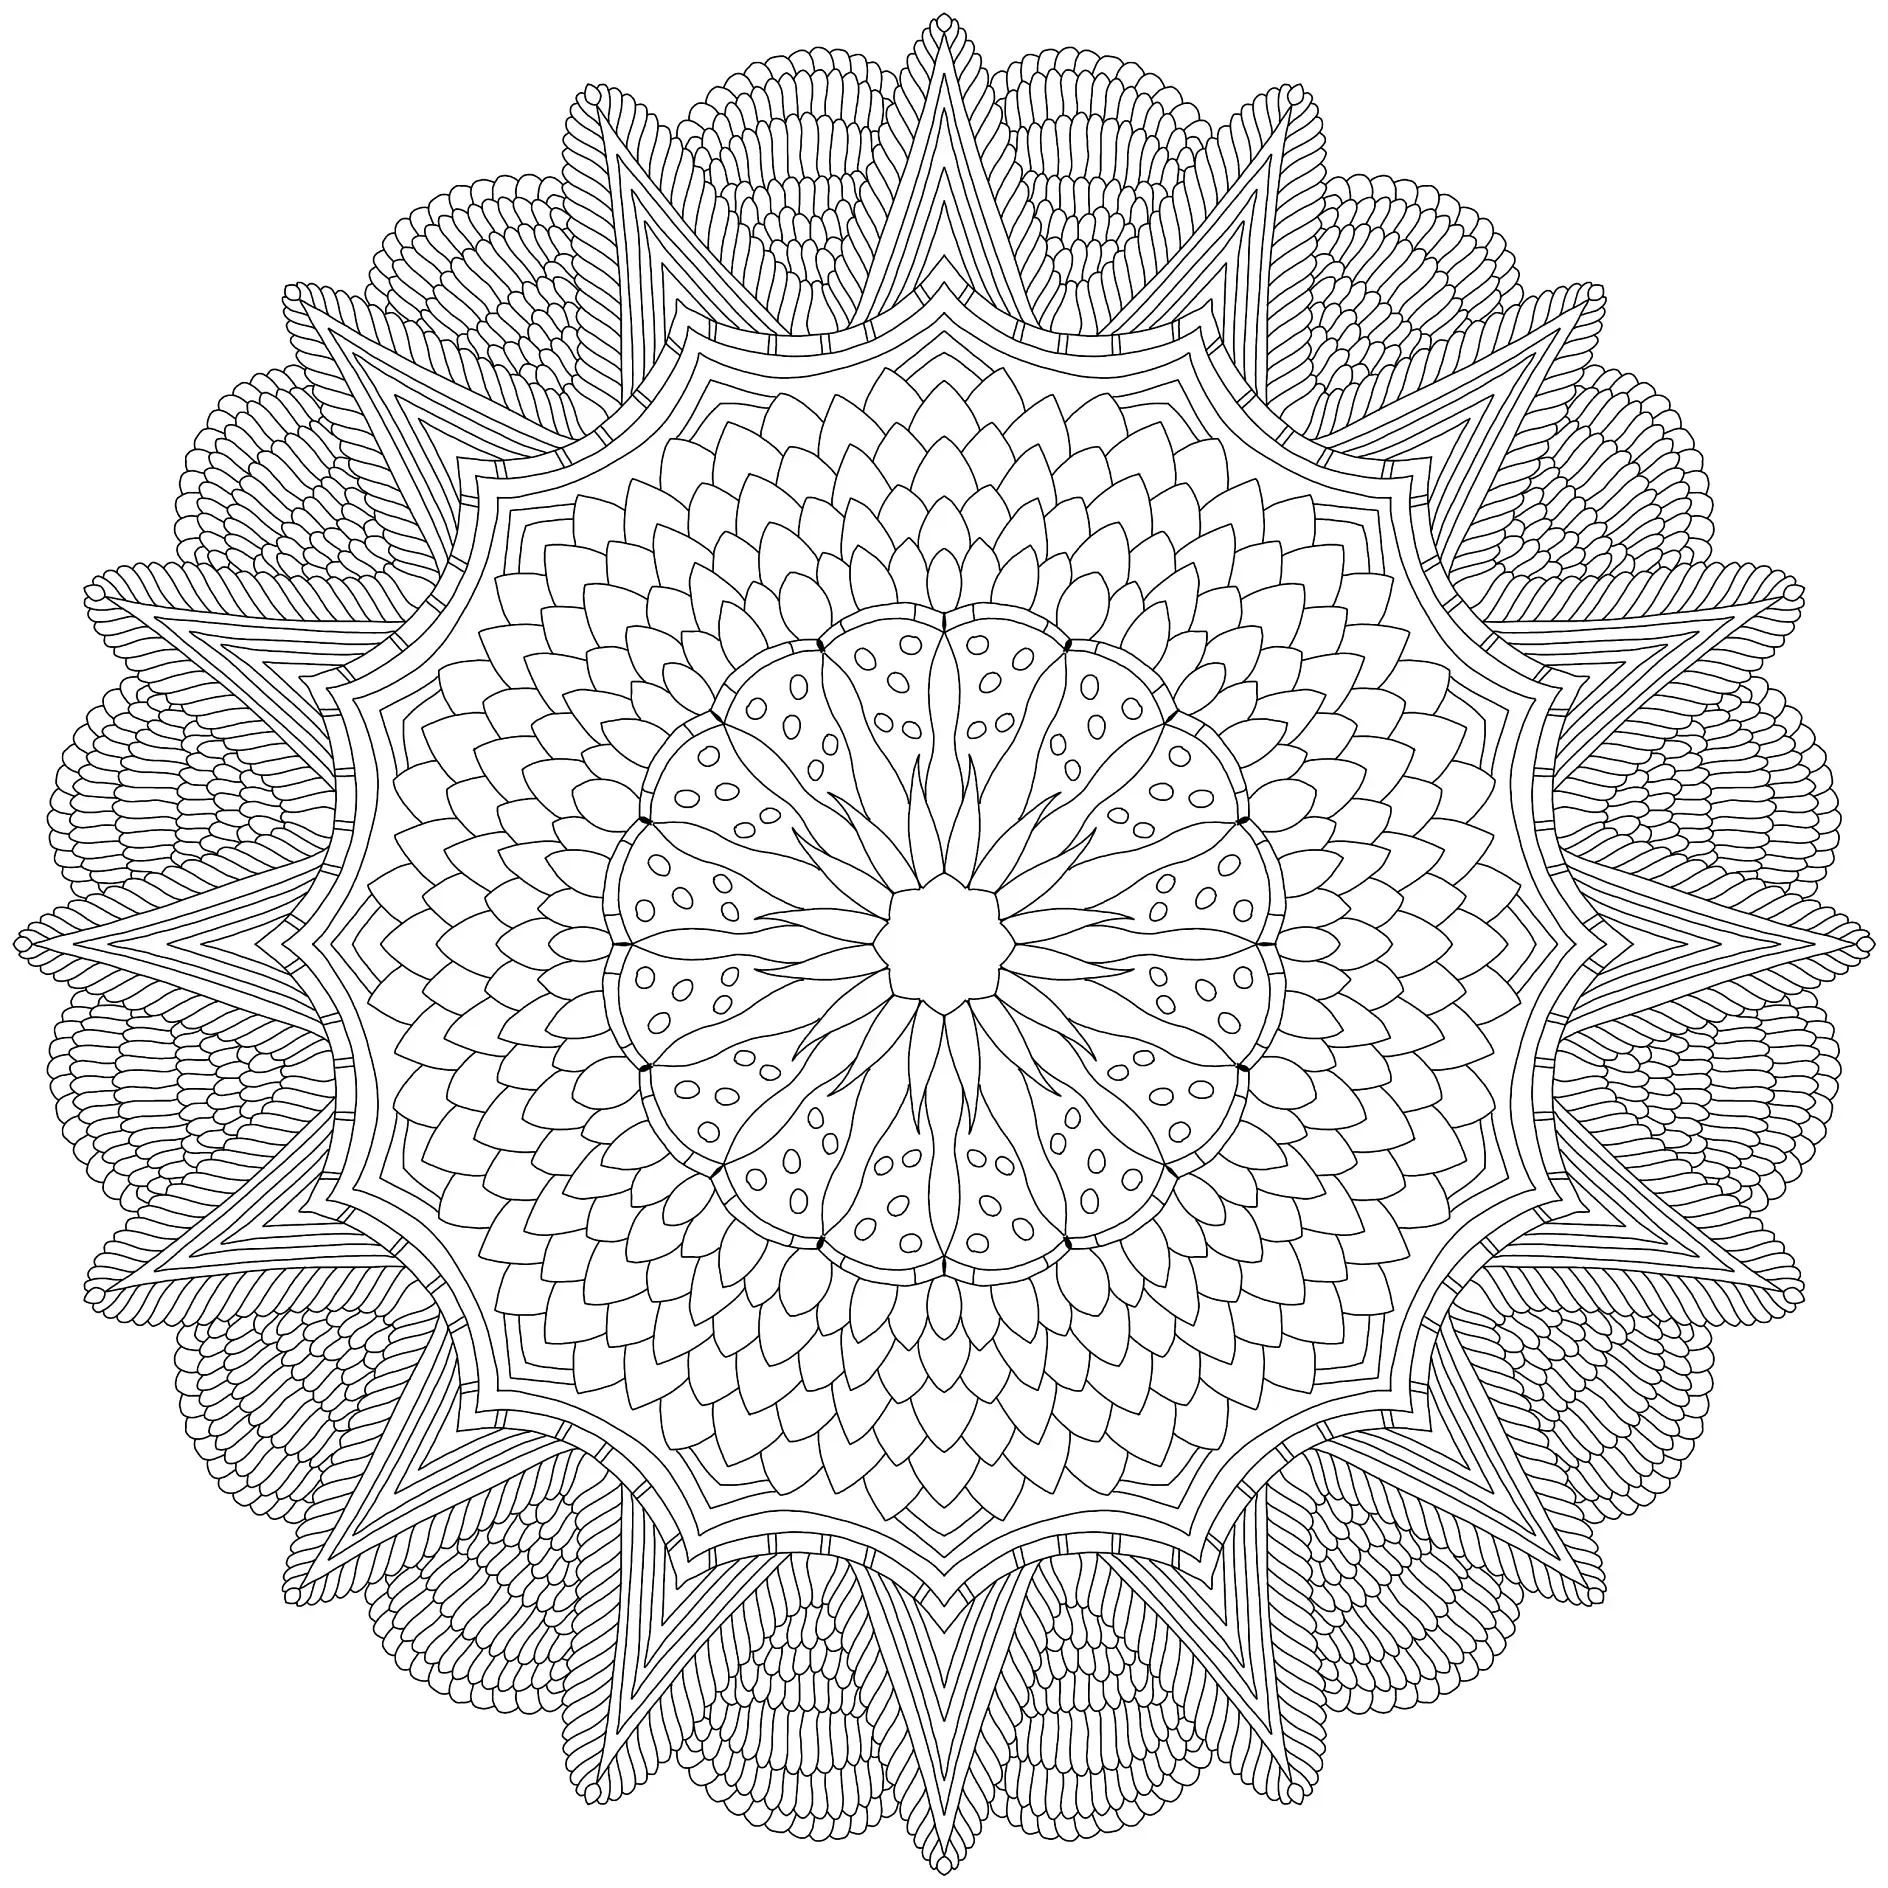 Ausmalbild Mandala mit detaillierten geometrischen Mustern